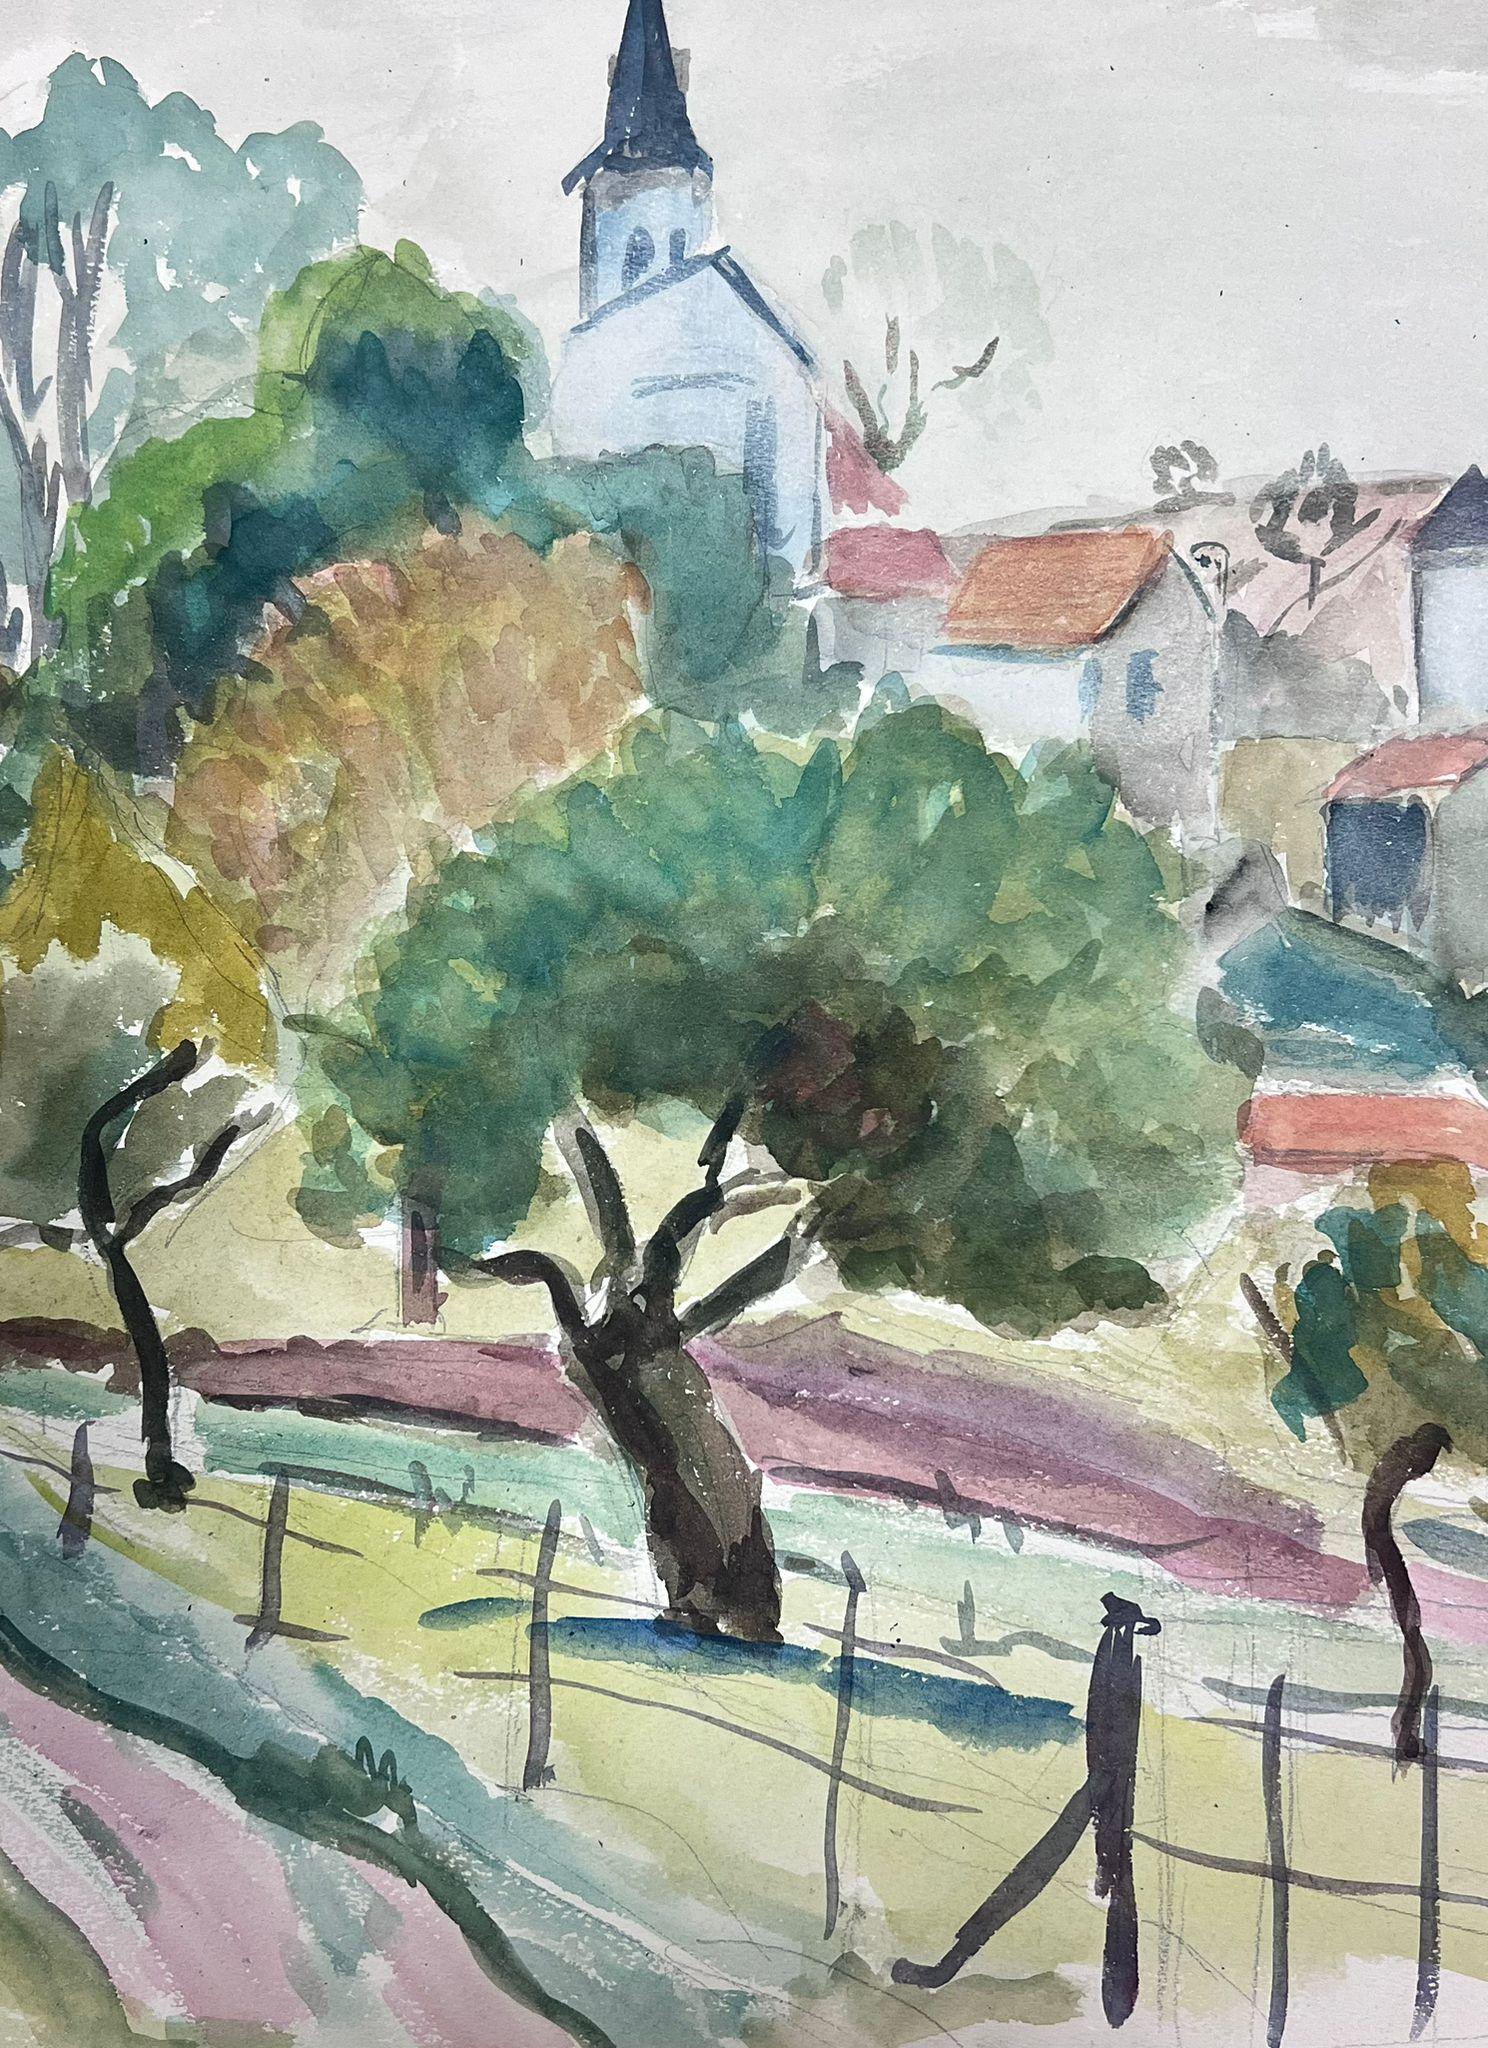 Postimpressionistisches Gemälde, Gated Field Behind French Town, Mitte des 20. Jahrhunderts – Painting von Guy Nicod